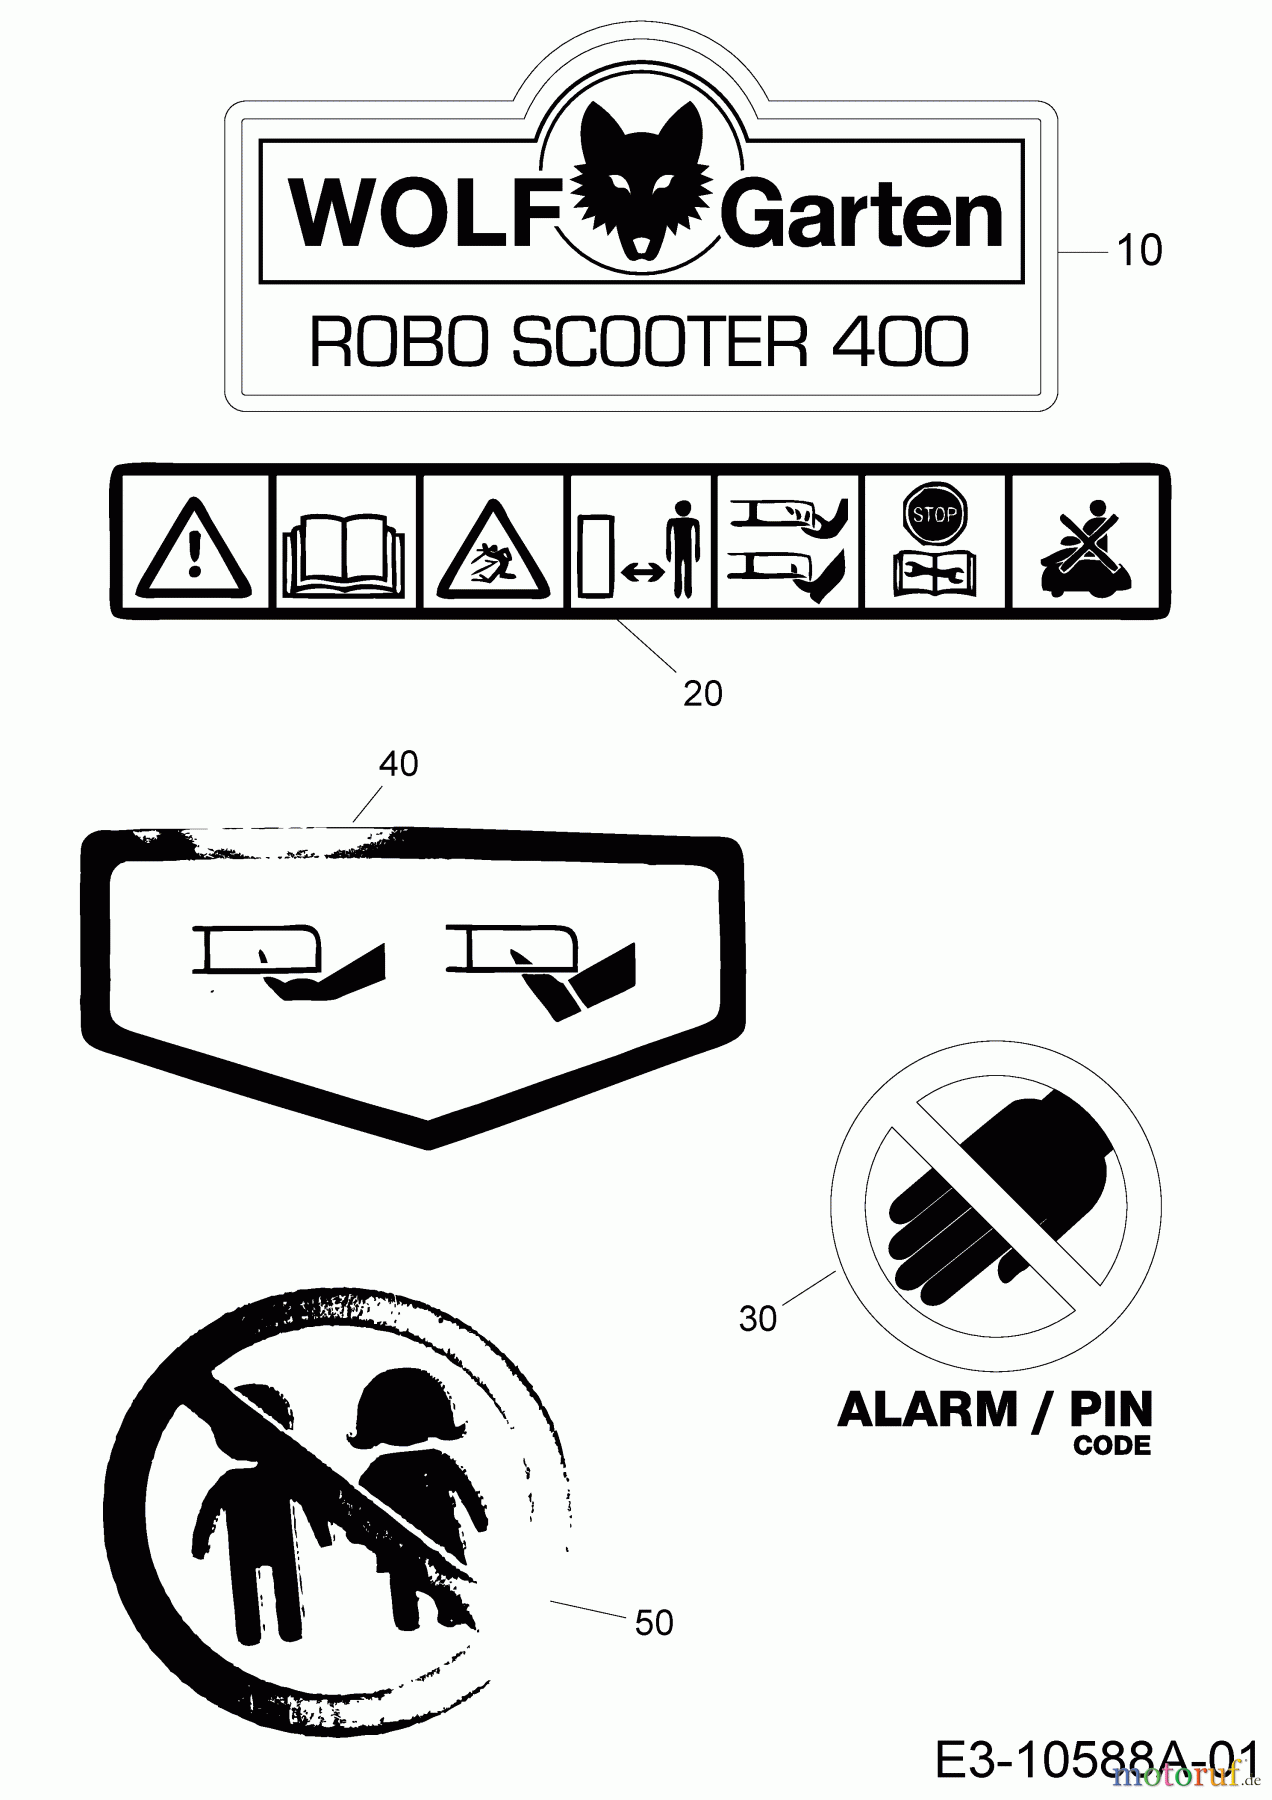  Wolf-Garten Mähroboter Robo Scooter 400 18BO04LF650  (2015) Aufkleber